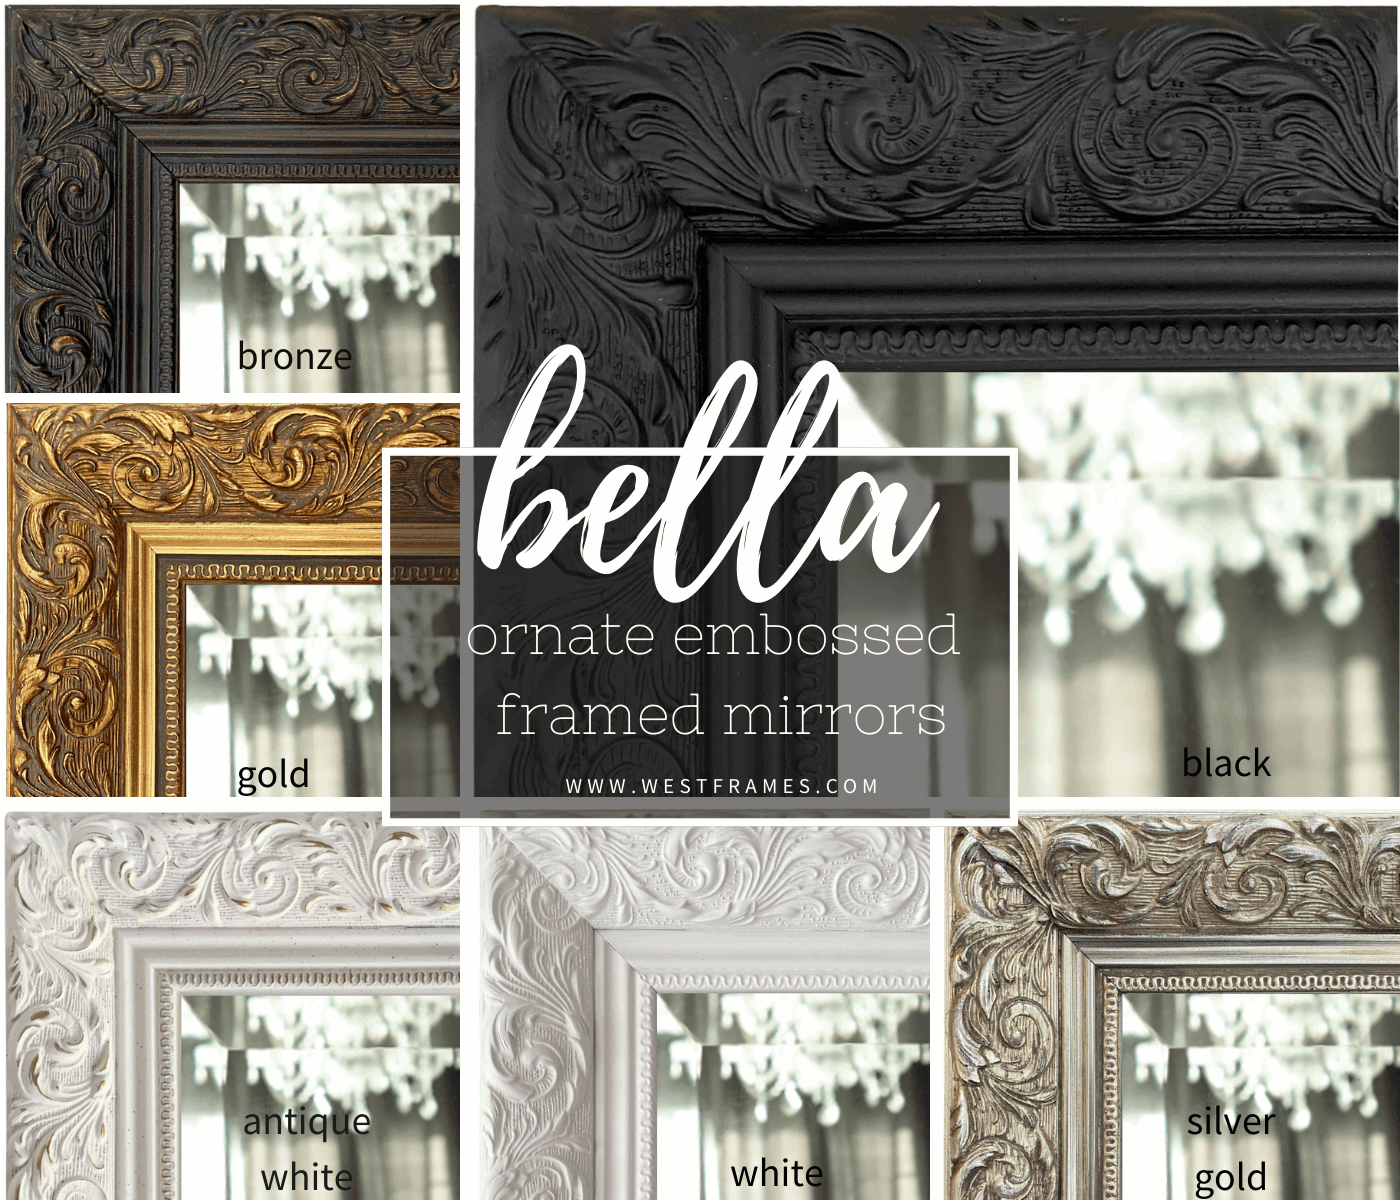 Bella French Ornate Embossed Framed Wall Mirror Vintage Black - West Frames